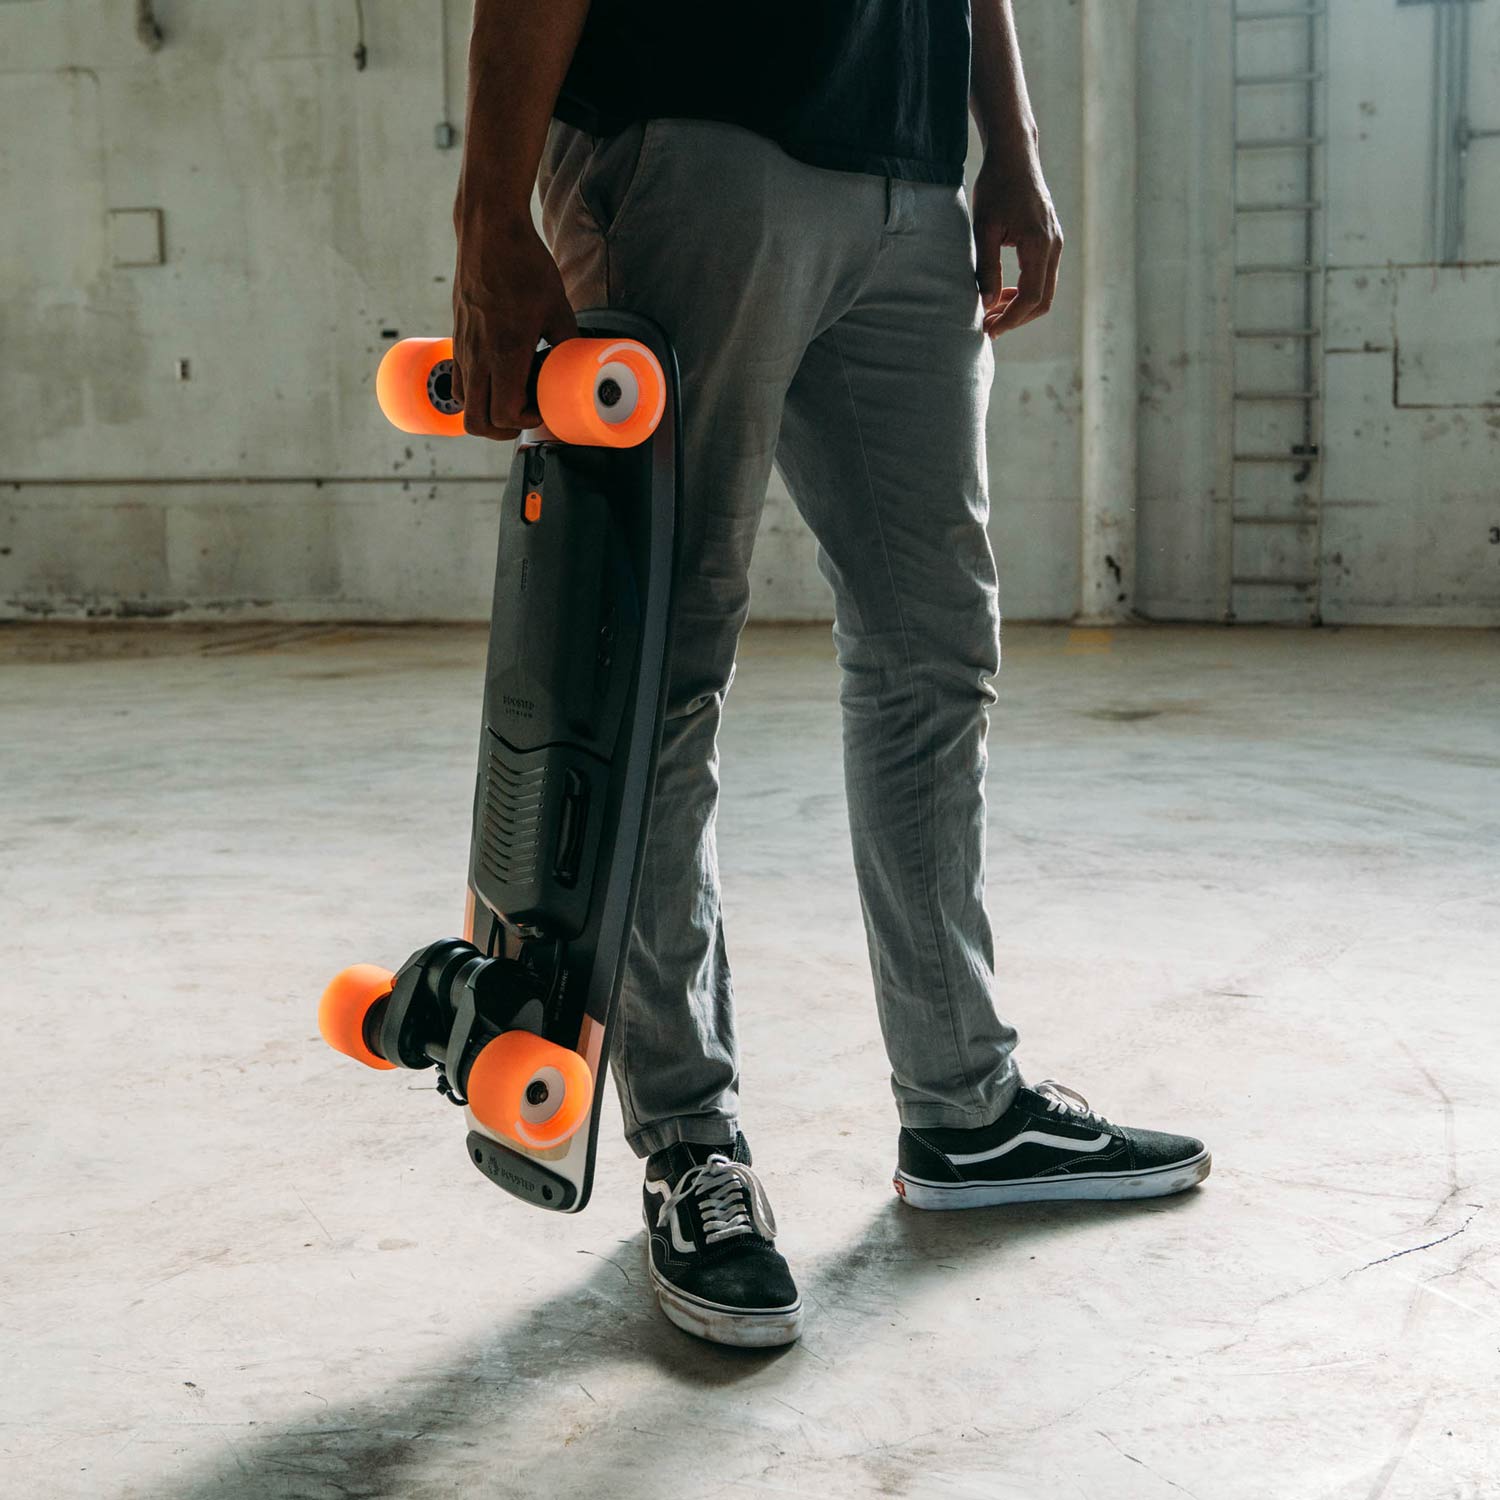 Comment bien choisir son skateboard électrique ?